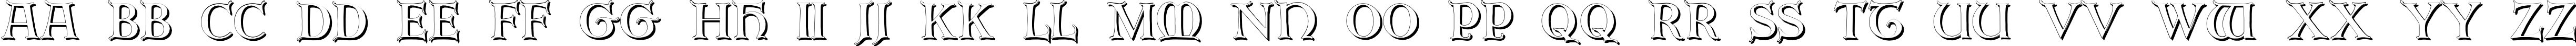 Пример написания английского алфавита шрифтом Erbar Initialen Shadow